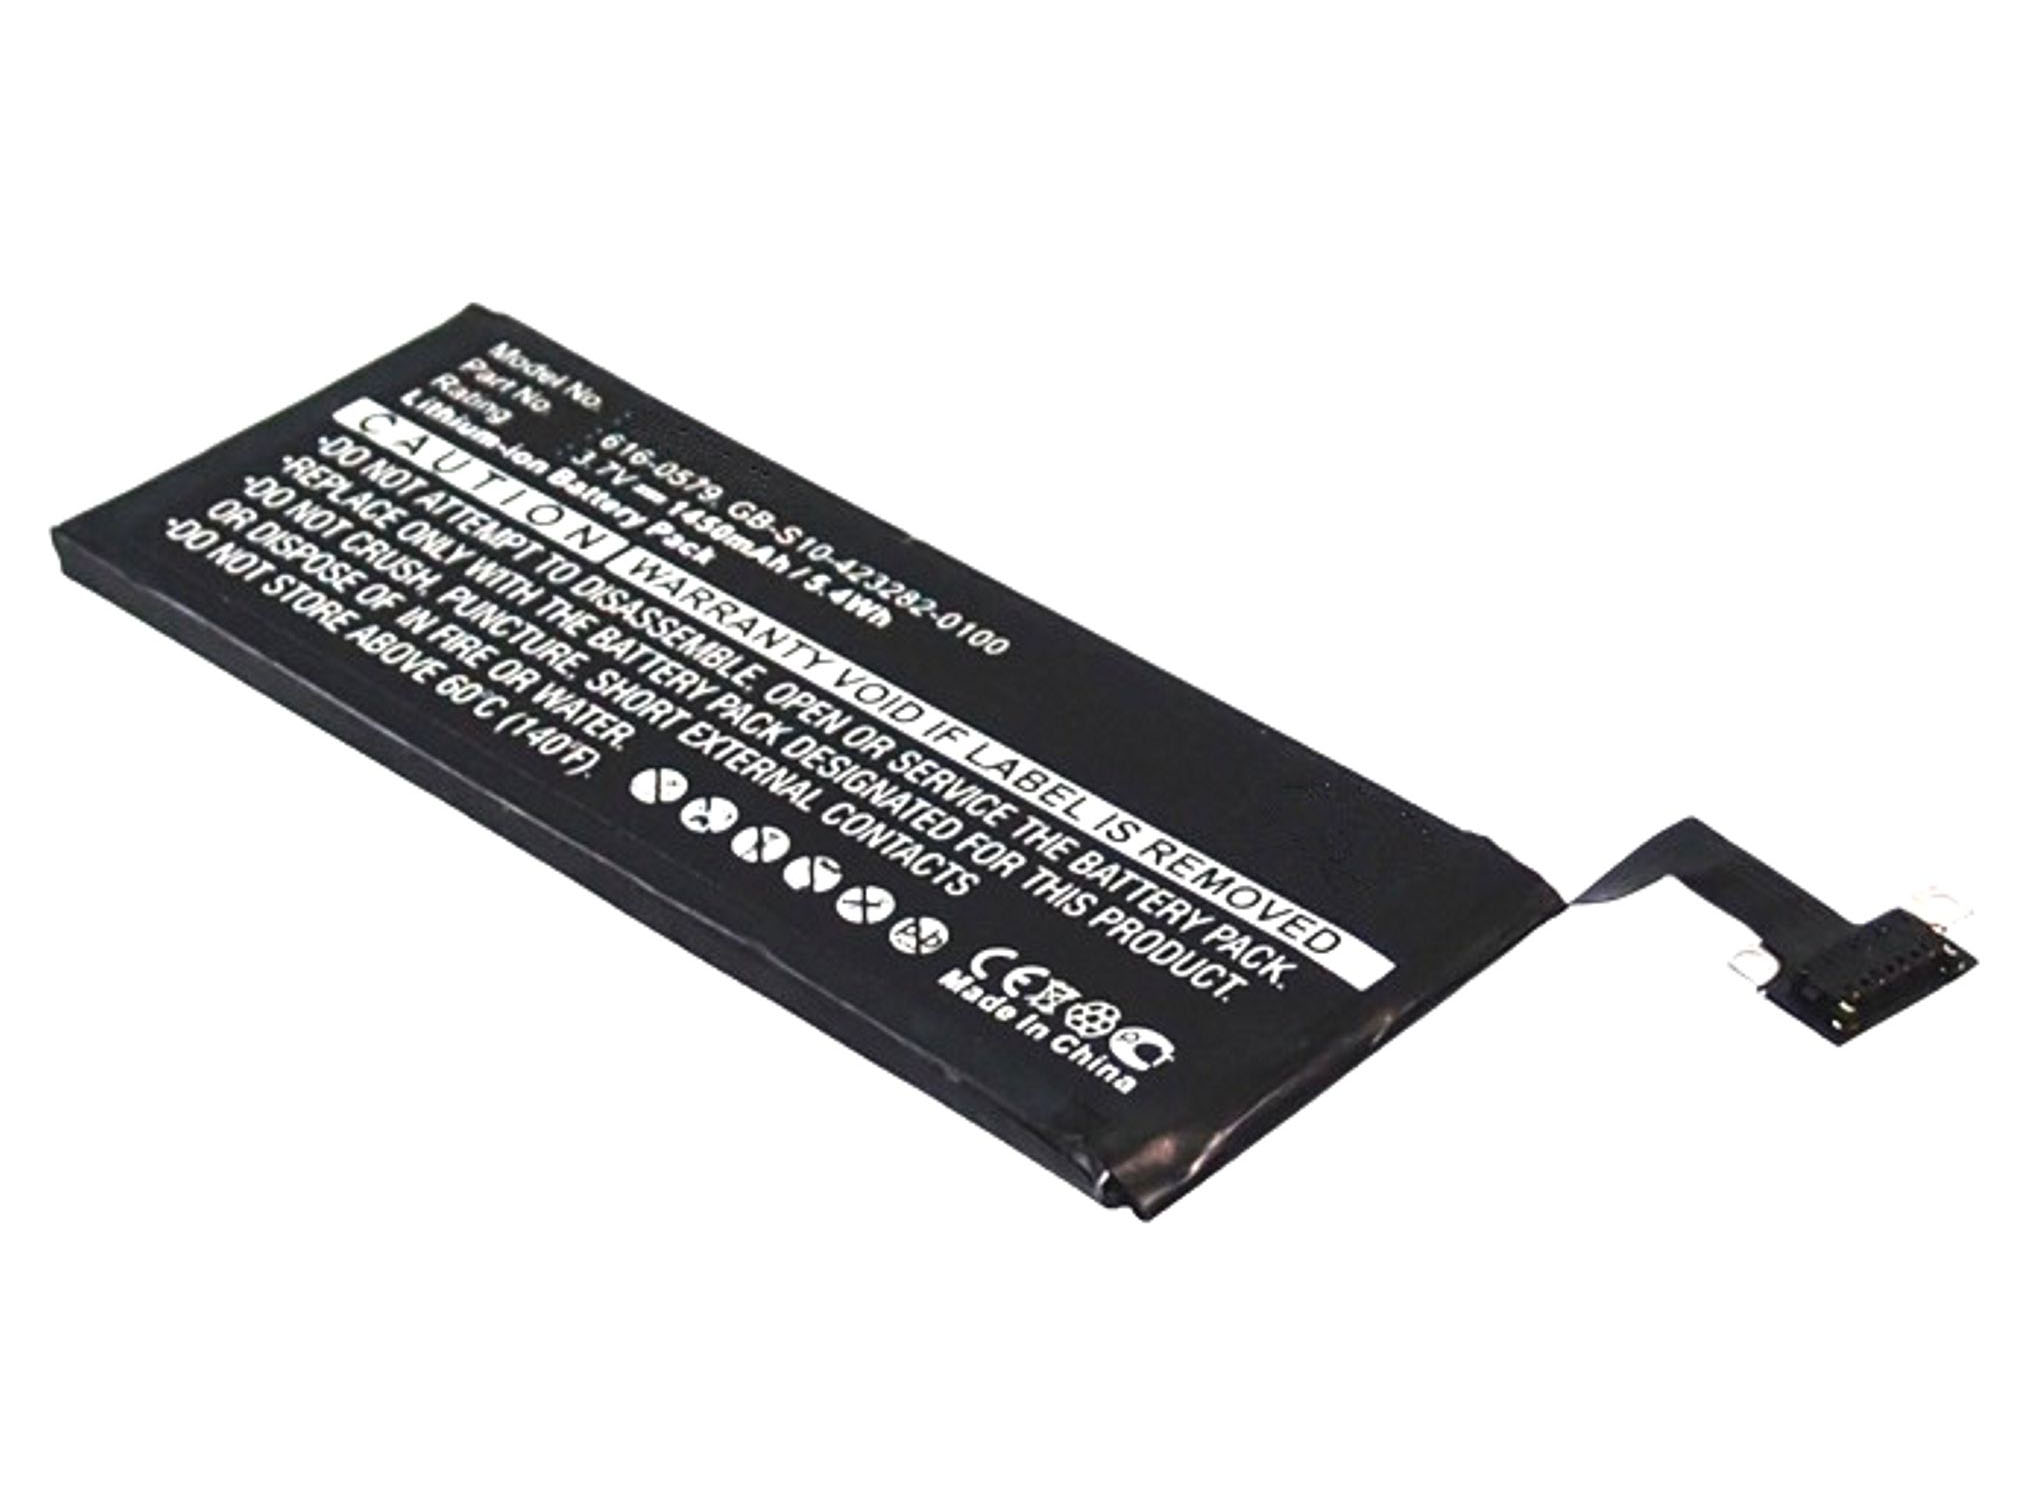 Akku kompatibel mit Apple iPhone 4S MD239D/A 3,00 Volt 1350 mAh 4,05 Wh Li-Ion Akku